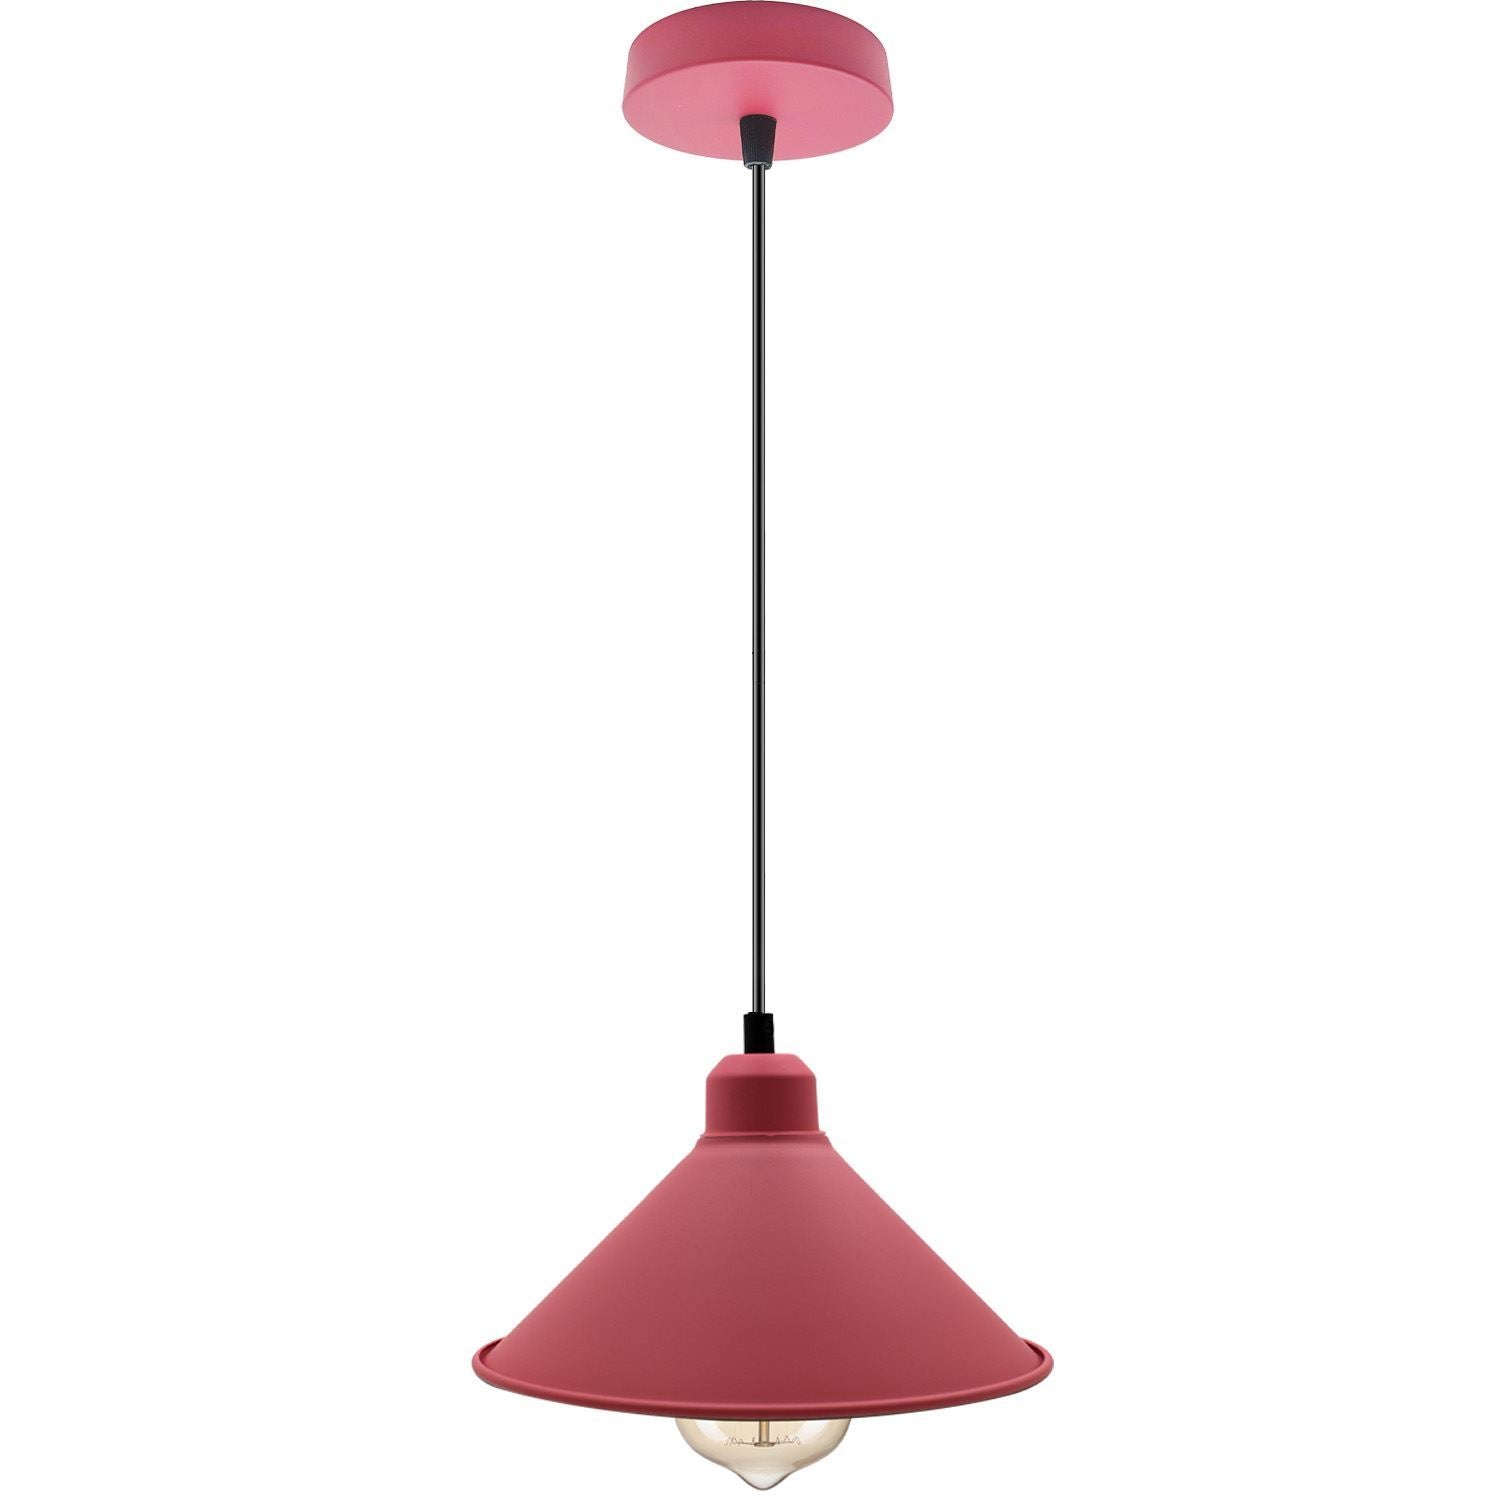 Retro industrielle hängende Kronleuchter-Decken-Kegel-Schatten rosa Farbe Vintage-Metallpendelleuchte